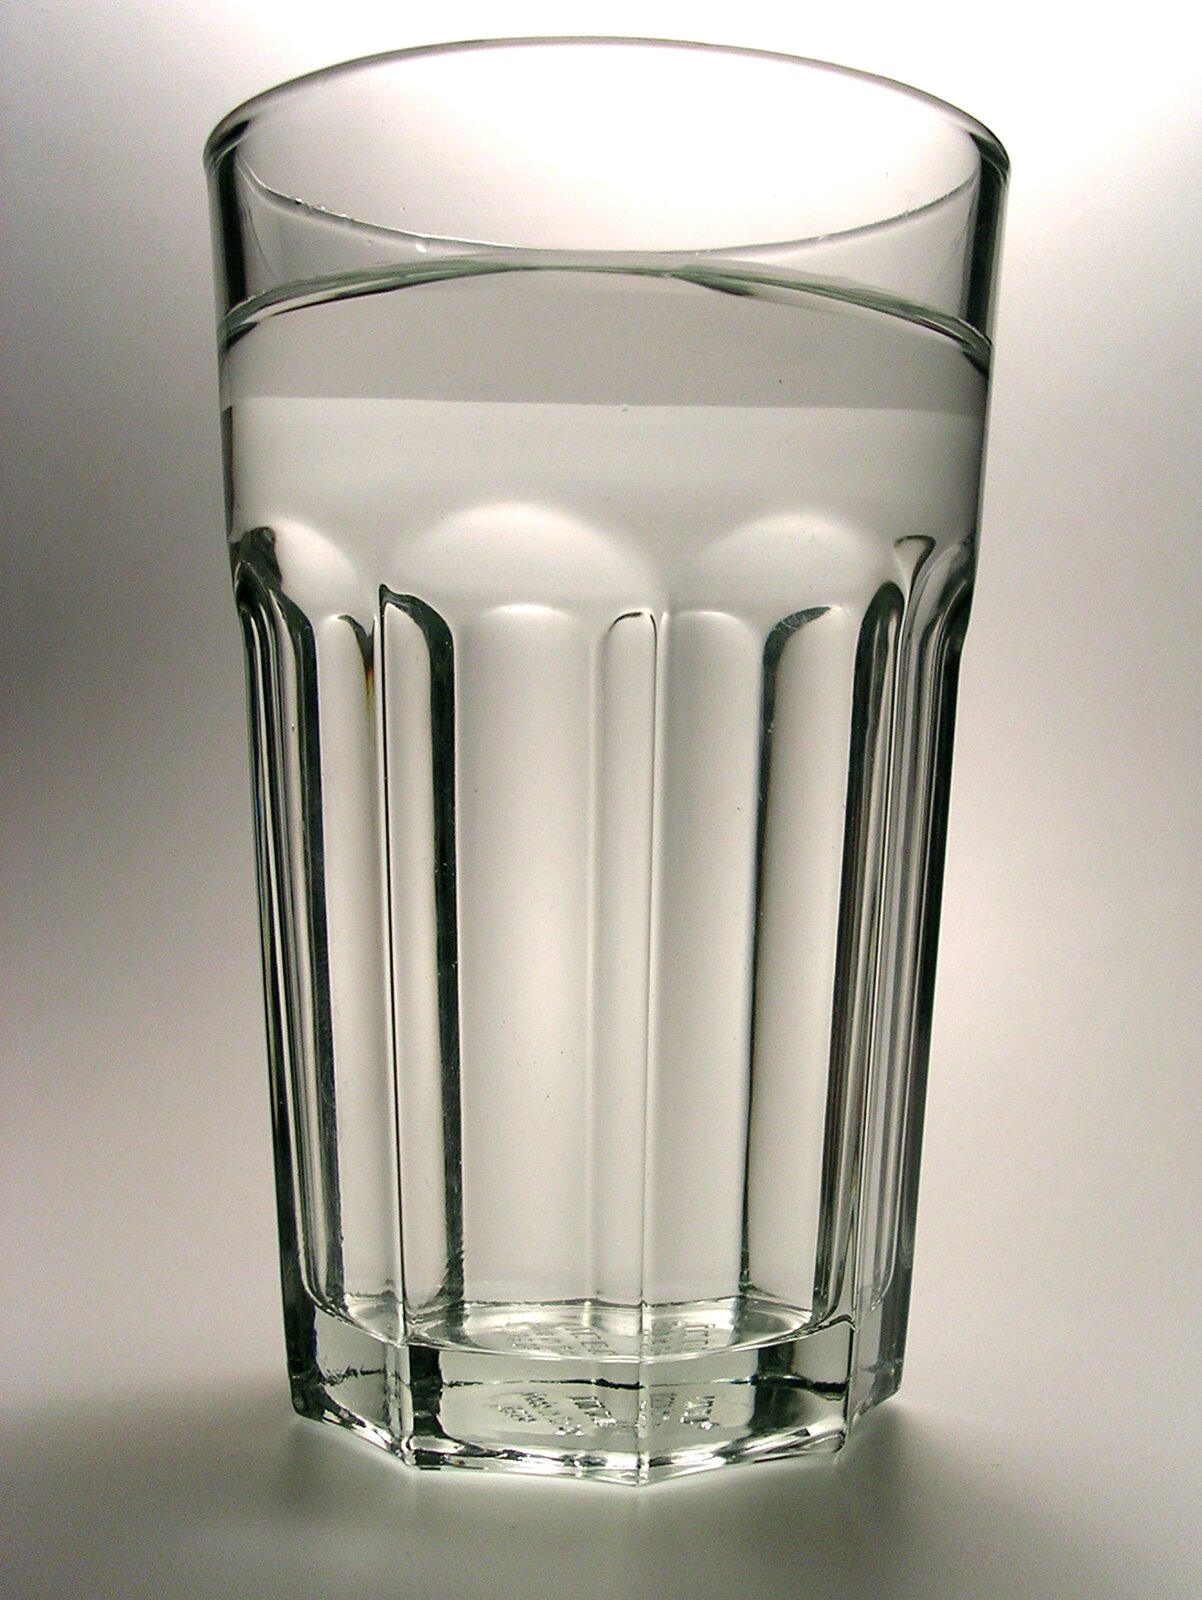 Zdjęcie przedstawia szklankę wypełnioną wodą stojącą na szarym tle.